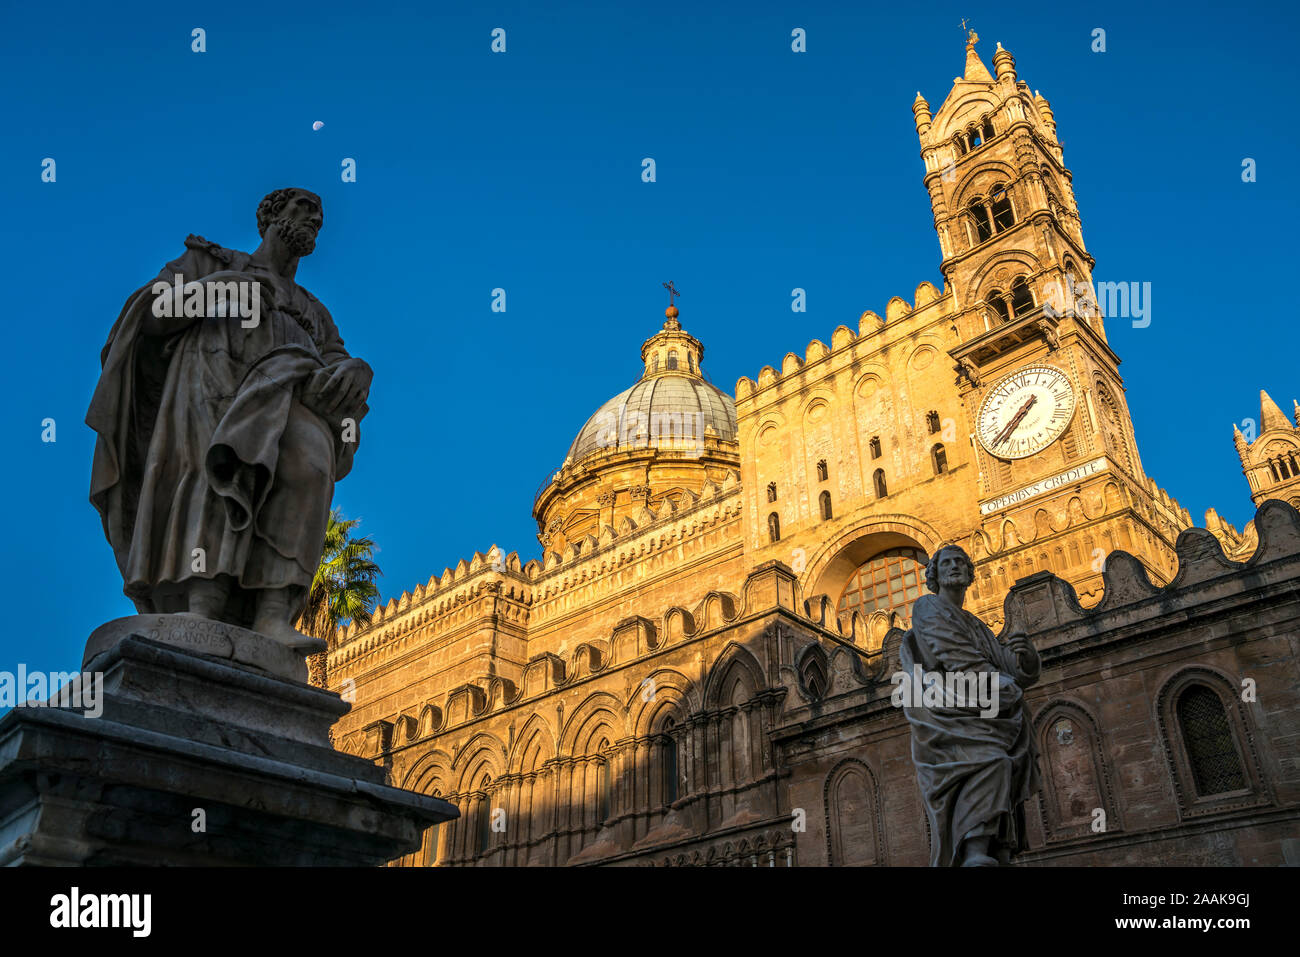 Statue der Kathedrale Maria Santissima Assunta, Palermo, Sizilien, Italien, Europa | Statue vor der Kathedrale Mariä Himmelfahrt von Vi Stockfoto